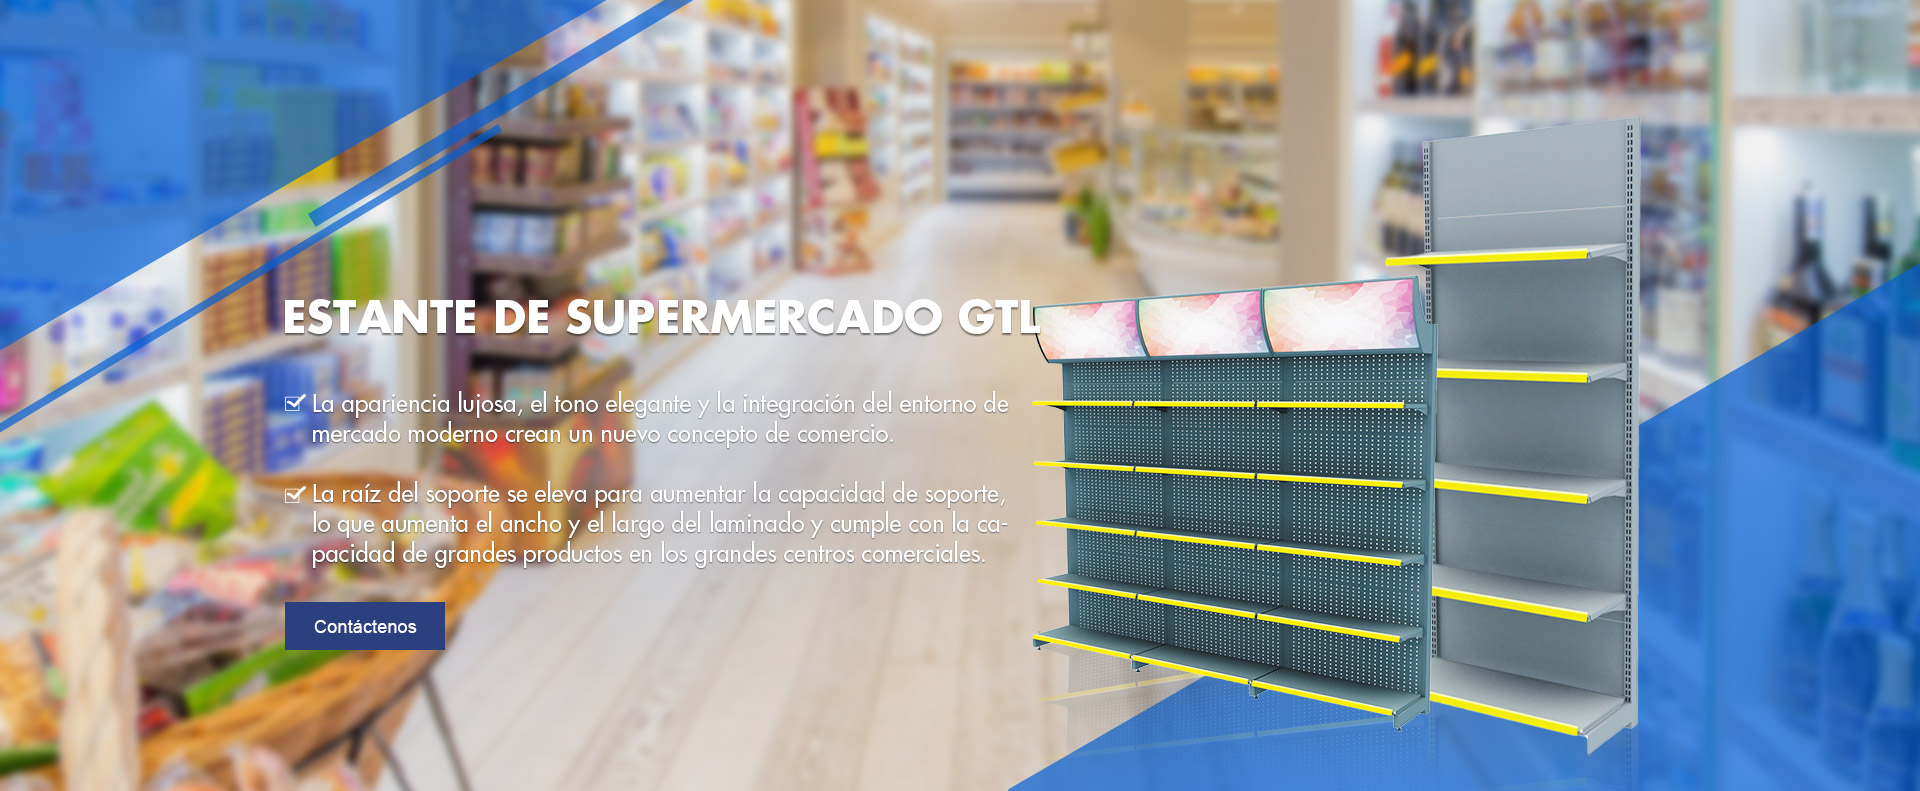 Equipos de supermercado GTL